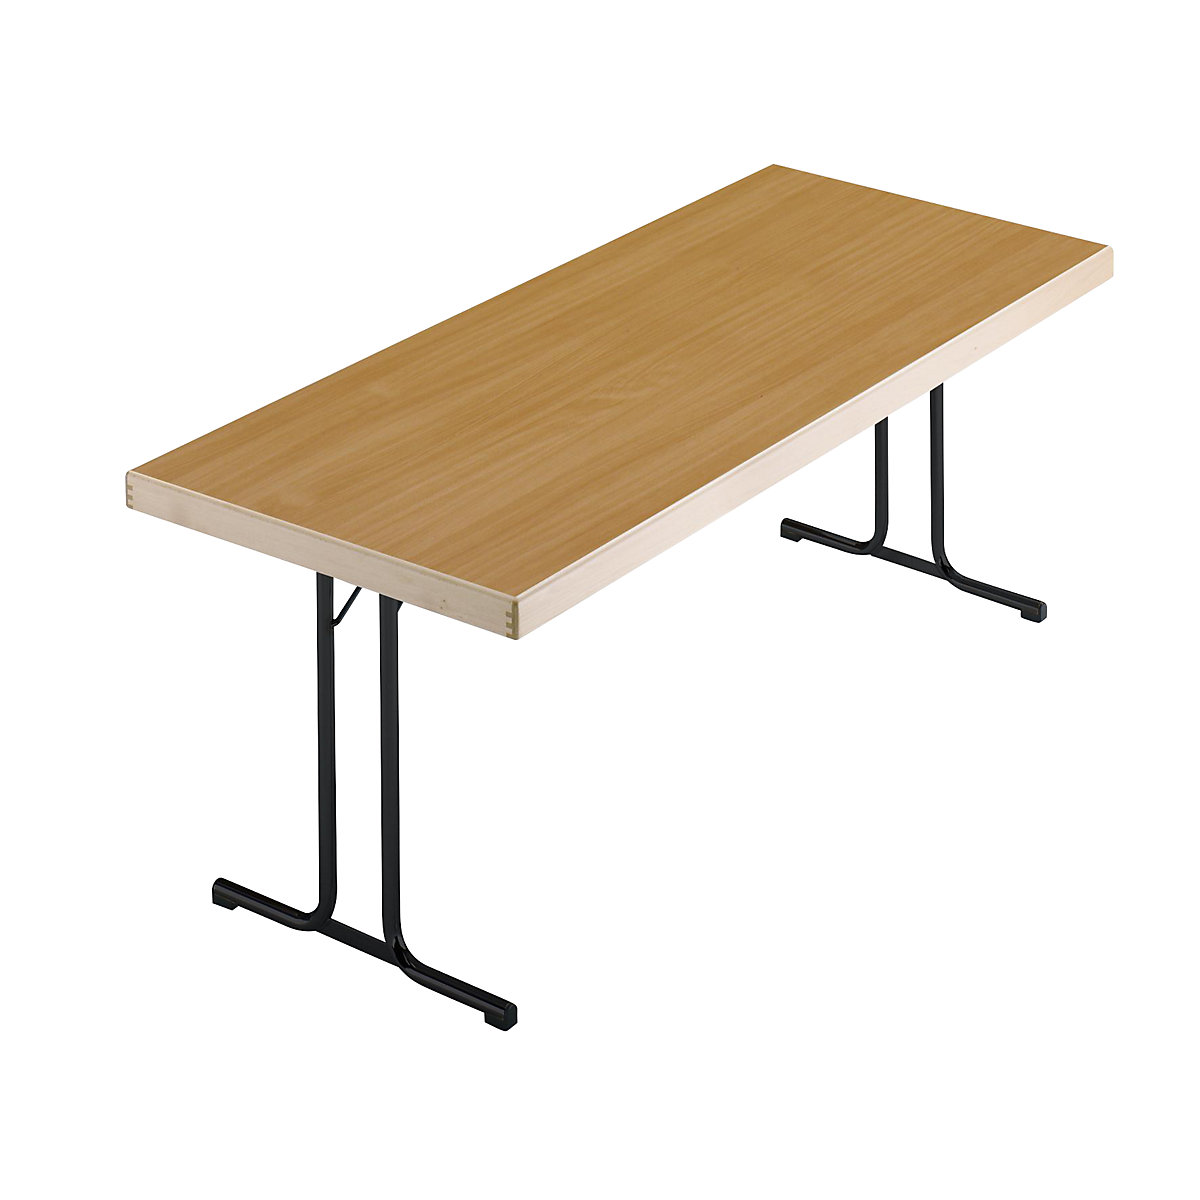 Sklopný stůl, podstavec s dvojitou T-nohou, 1500 x 800 mm, podstavec antracitový, deska bukový dekor-4